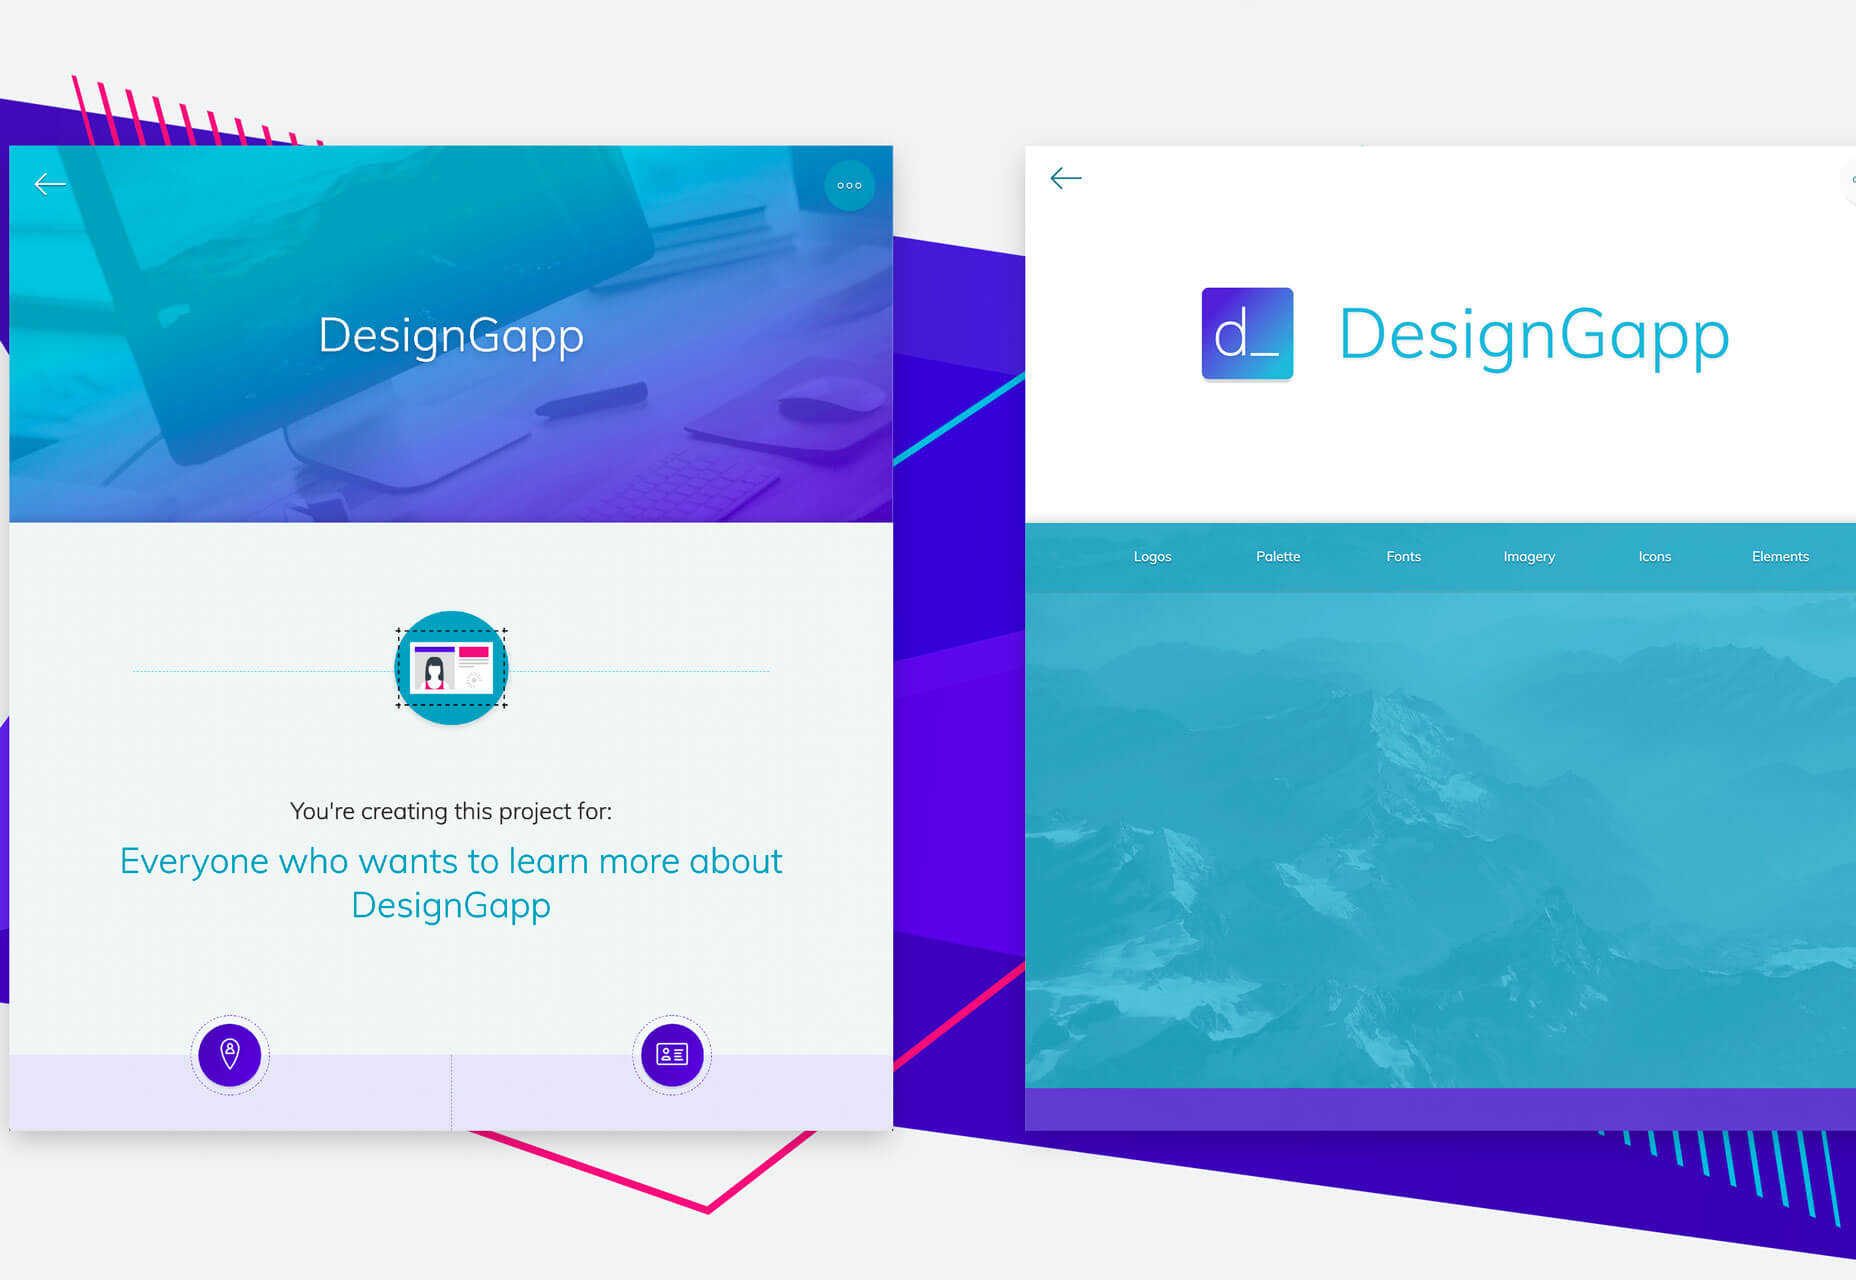 DesignGapp